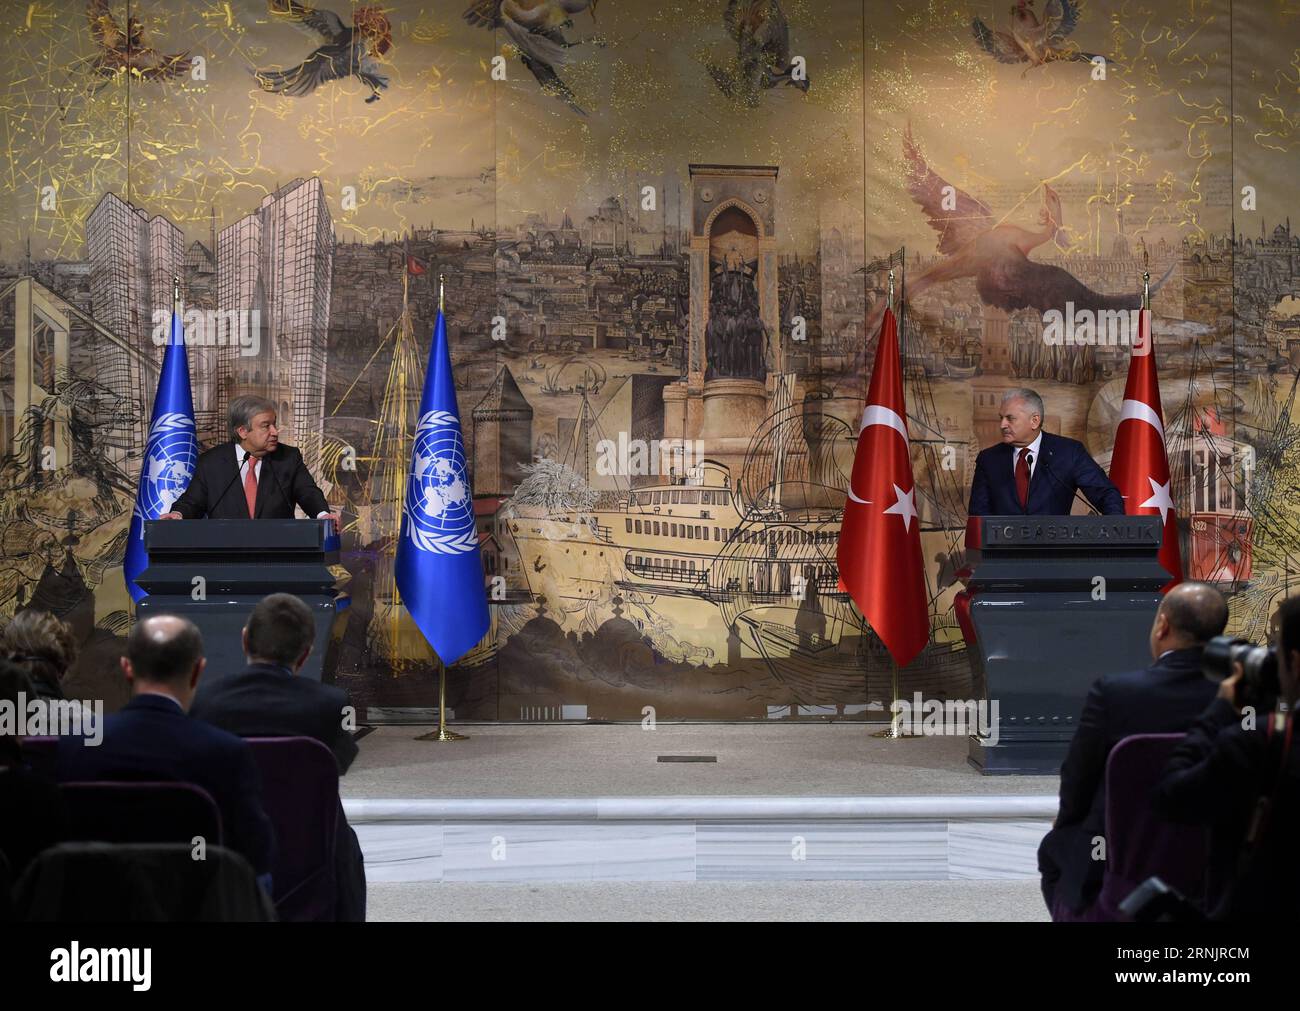 (170210) -- ISTANBUL, 10. Februar 2017 -- UN-Generalsekretär Antonio Guterres (L) und der türkische Premierminister Binali Yildirim nehmen am 10. Februar 2017 an einer Pressekonferenz in Istanbul, Türkei, Teil. Der türkische Premierminister Binali Yildirim und der UN-Generalsekretär Antonio Guterres äußerten am Freitag ihren Optimismus für eine bahnbrechende Lösung der Zypernfrage in naher Zukunft, die beide Gemeinschaften zufriedenstellen würde. ) TÜRKEI-ISTANBUL-UN-GUTERRES-ZYPERN-AUSGABE HexCanling PUBLICATIONxNOTxINxCHN 170210 Istanbul 10. Februar 2017 UN-Generalsekretär Antonio Guterres l und der türkische Premierminister Binali Yildirim Stockfoto